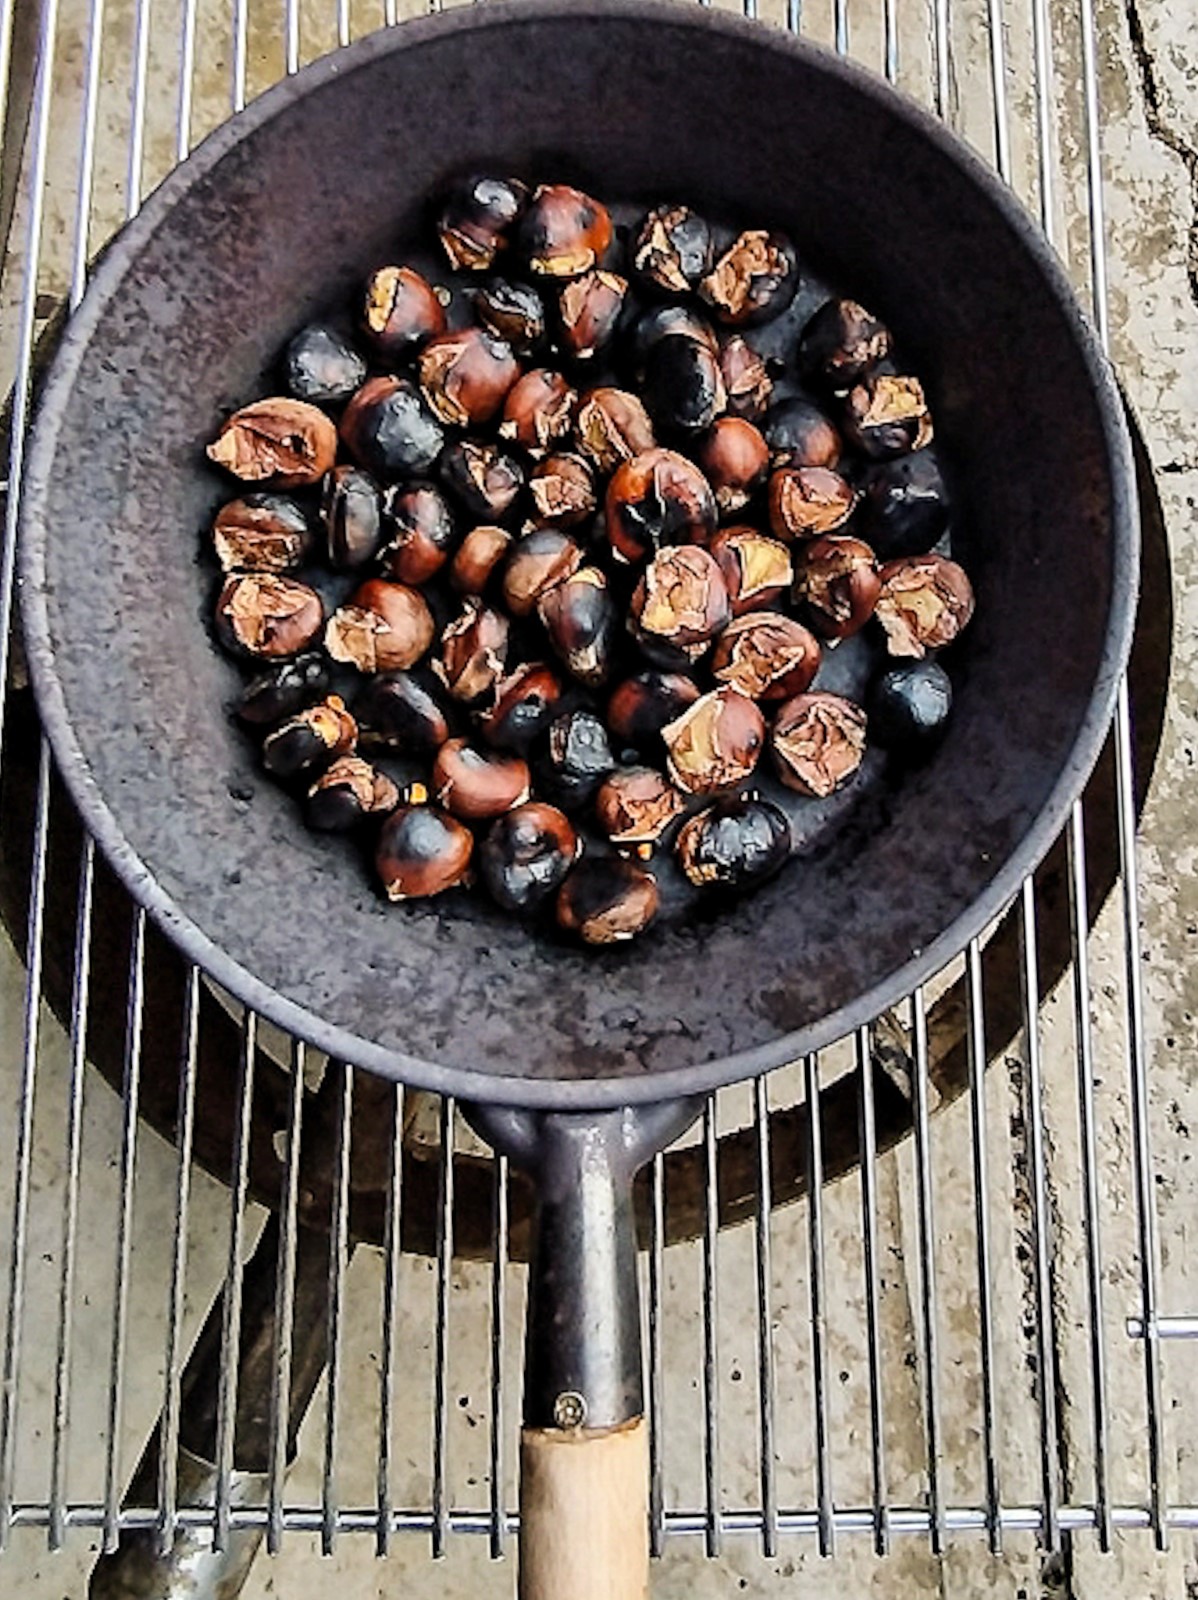 Slastni pečeni kostanji - Roasted Chesnuts